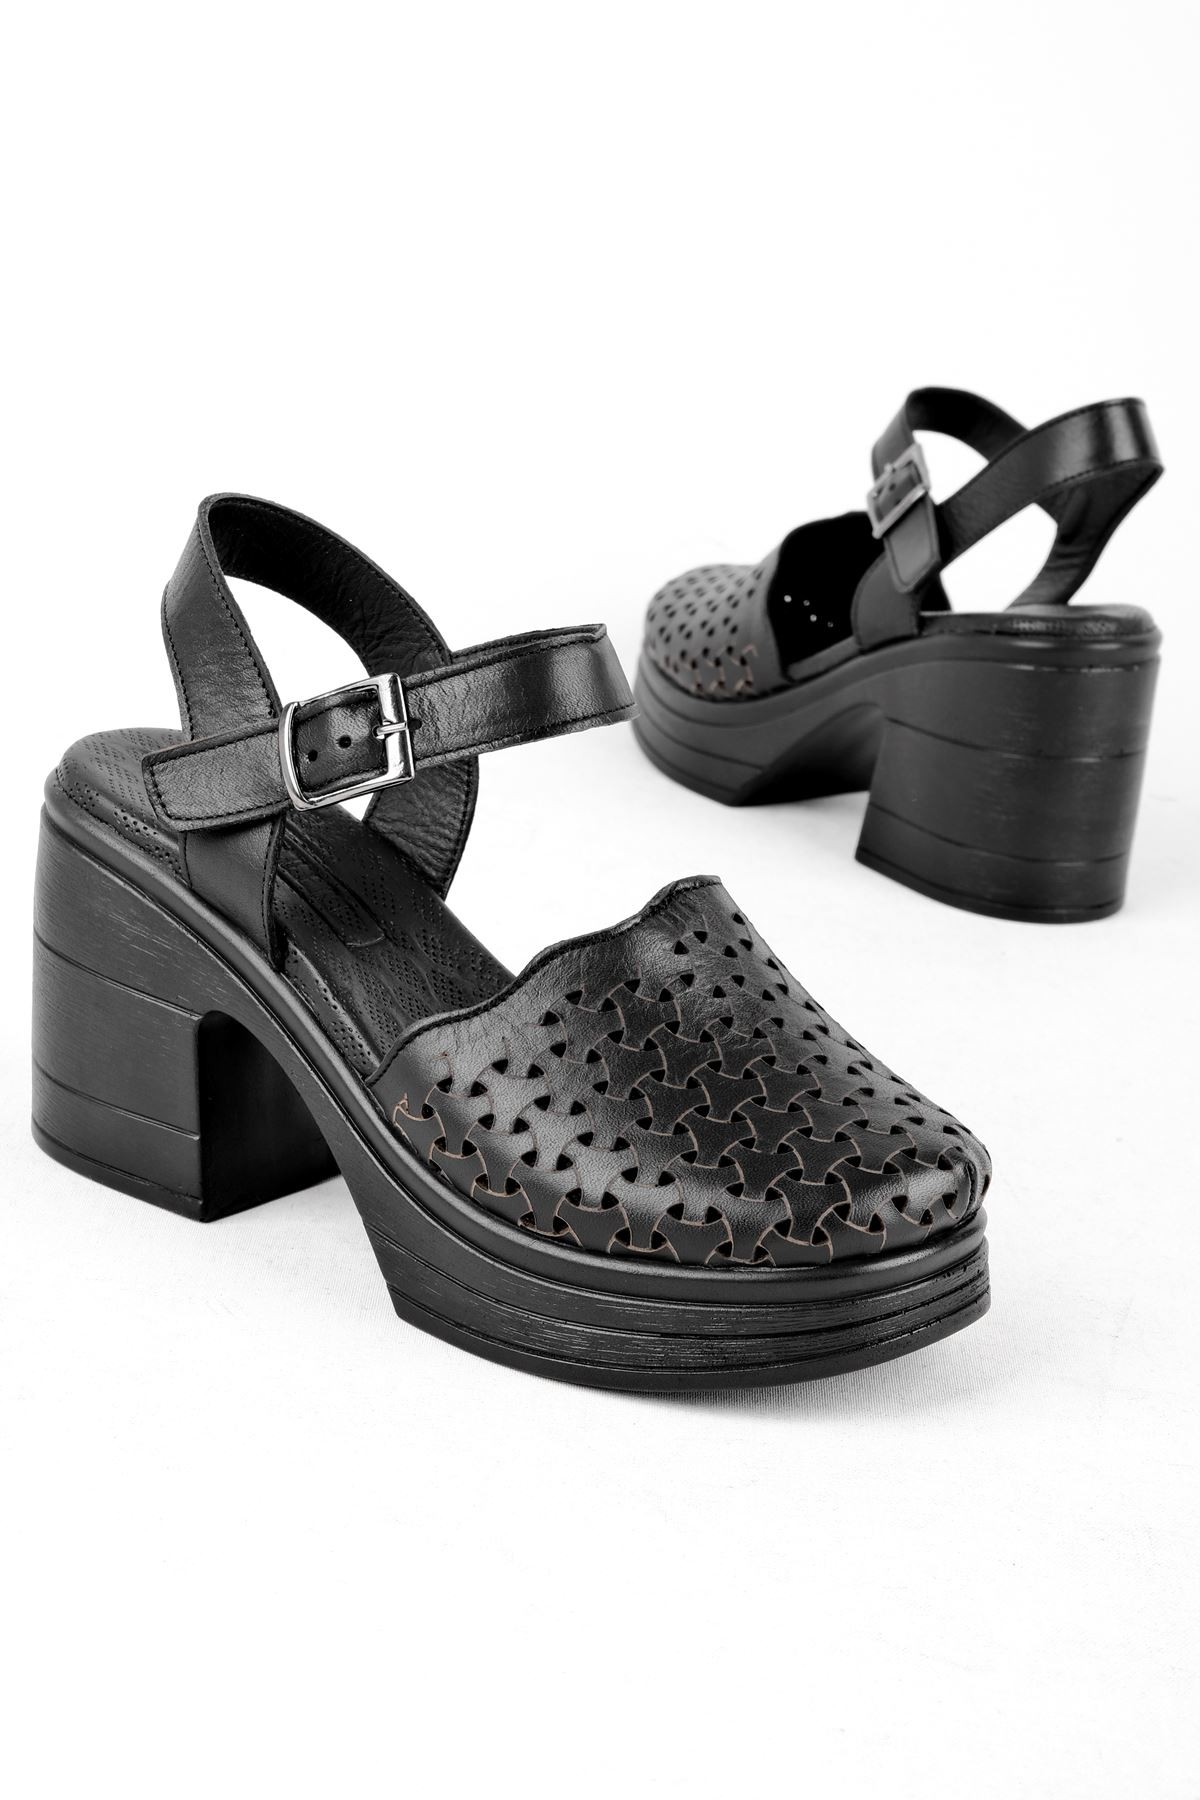 Kely Kadın Hakiki Deri Desenli Önü Kapalı Topuklu Sandalet (B3121) - Siyah